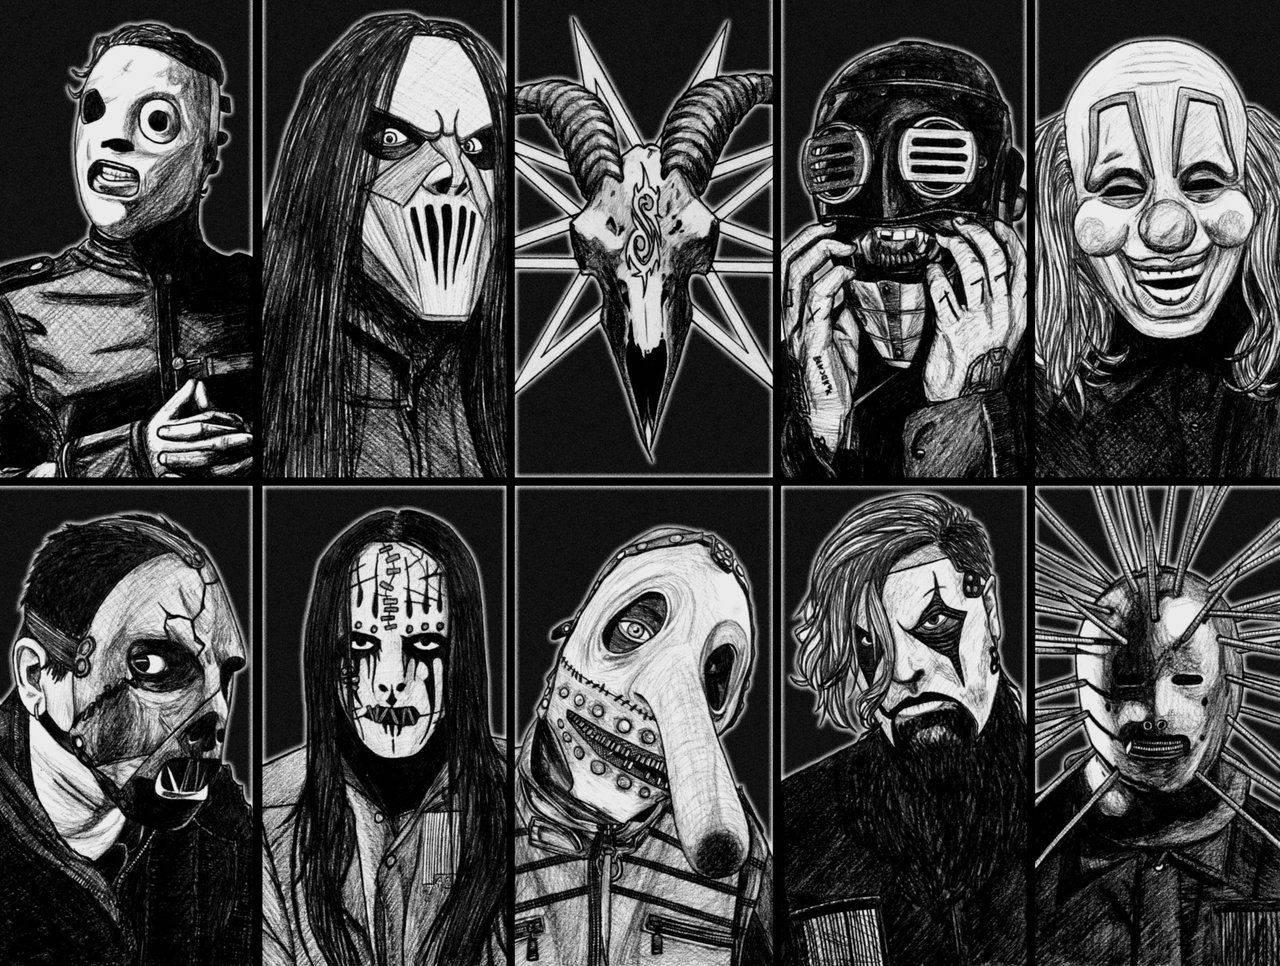 Free Slipknot Wallpaper Downloads, [100+] Slipknot Wallpapers for FREE |  